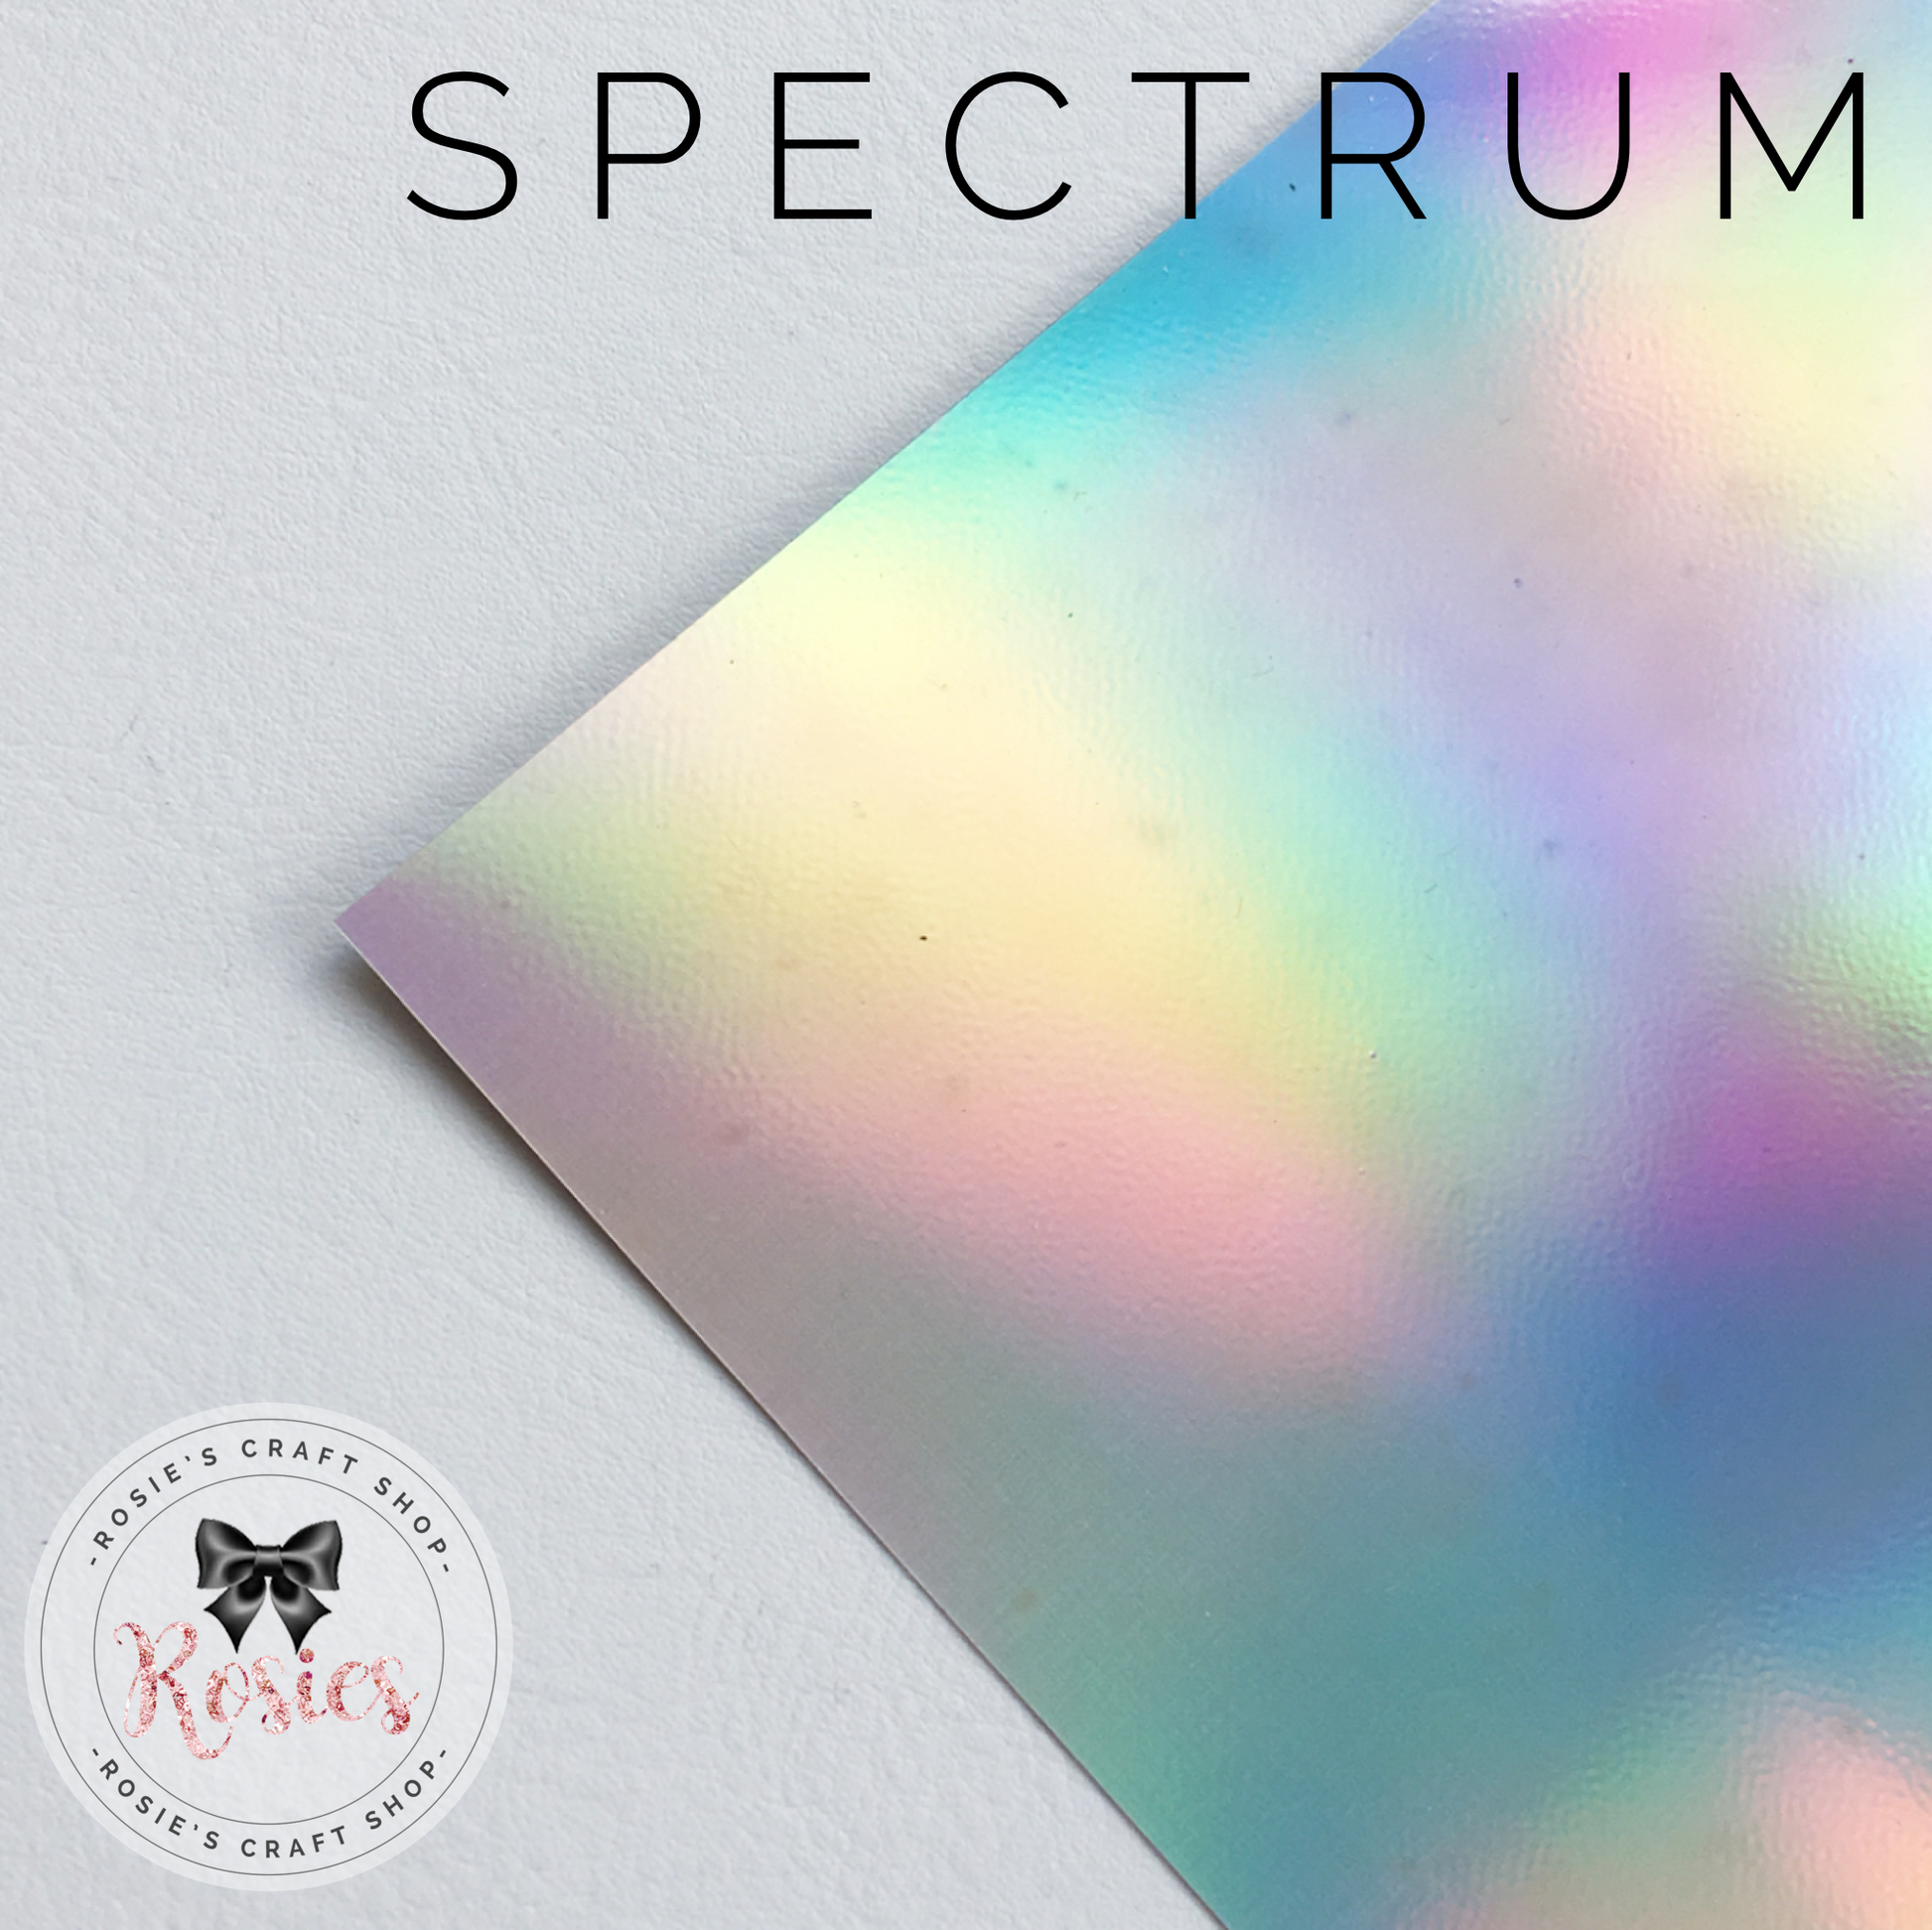 Spectrum Silver Metallic Iron On Vinyl HTV - Rosie's Craft Shop Ltd